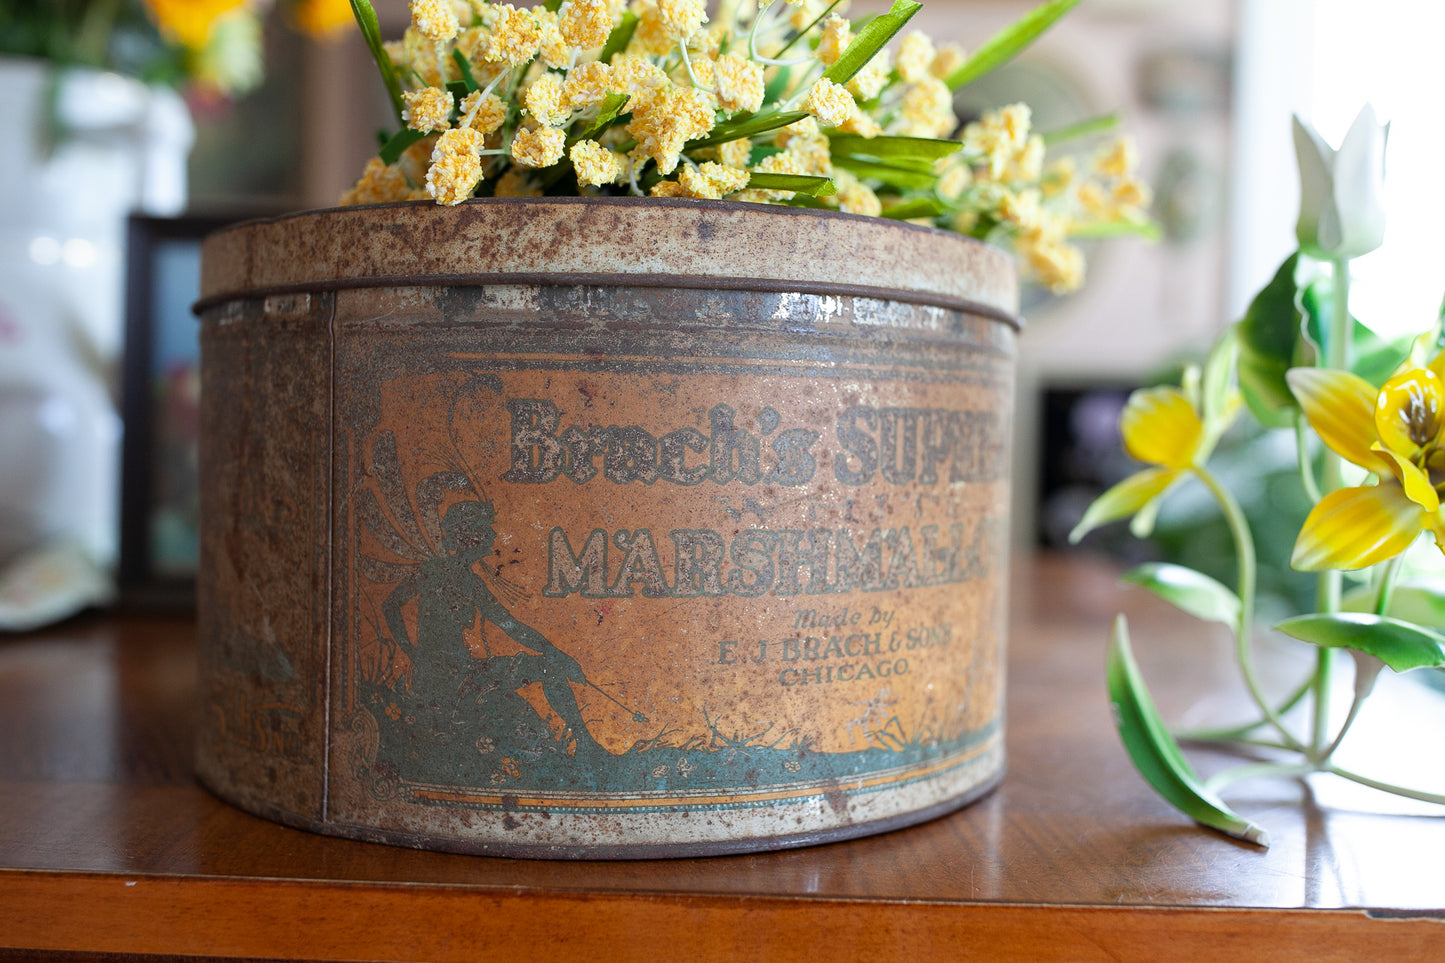 Vintage Marshmallow Tin - Brach's Supreme Marshmallows